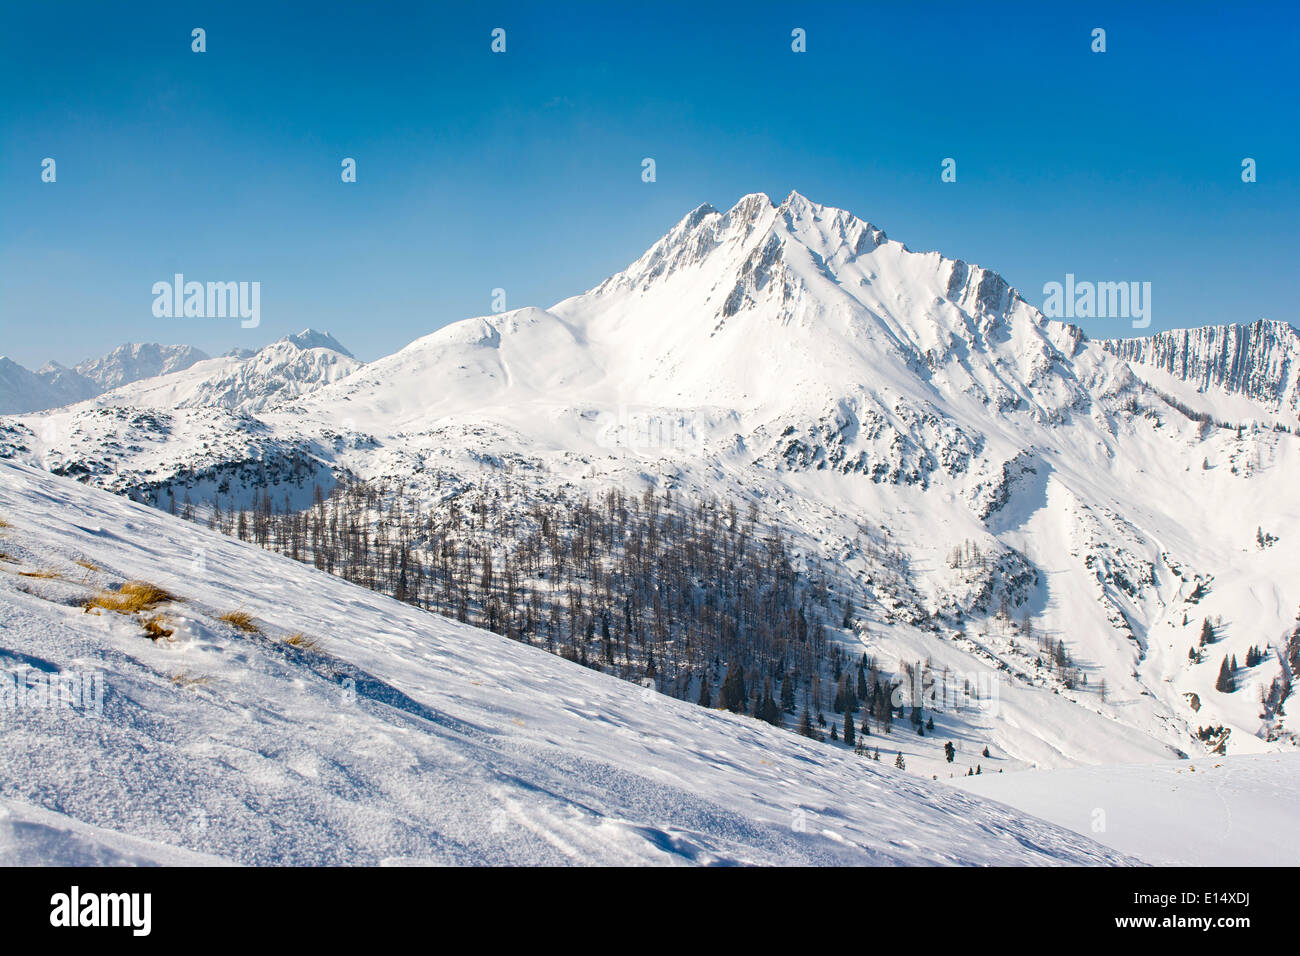 Mondscheinspitze Mountain in winter, Karwendel Mountains, Tyrol, Austria Stock Photo